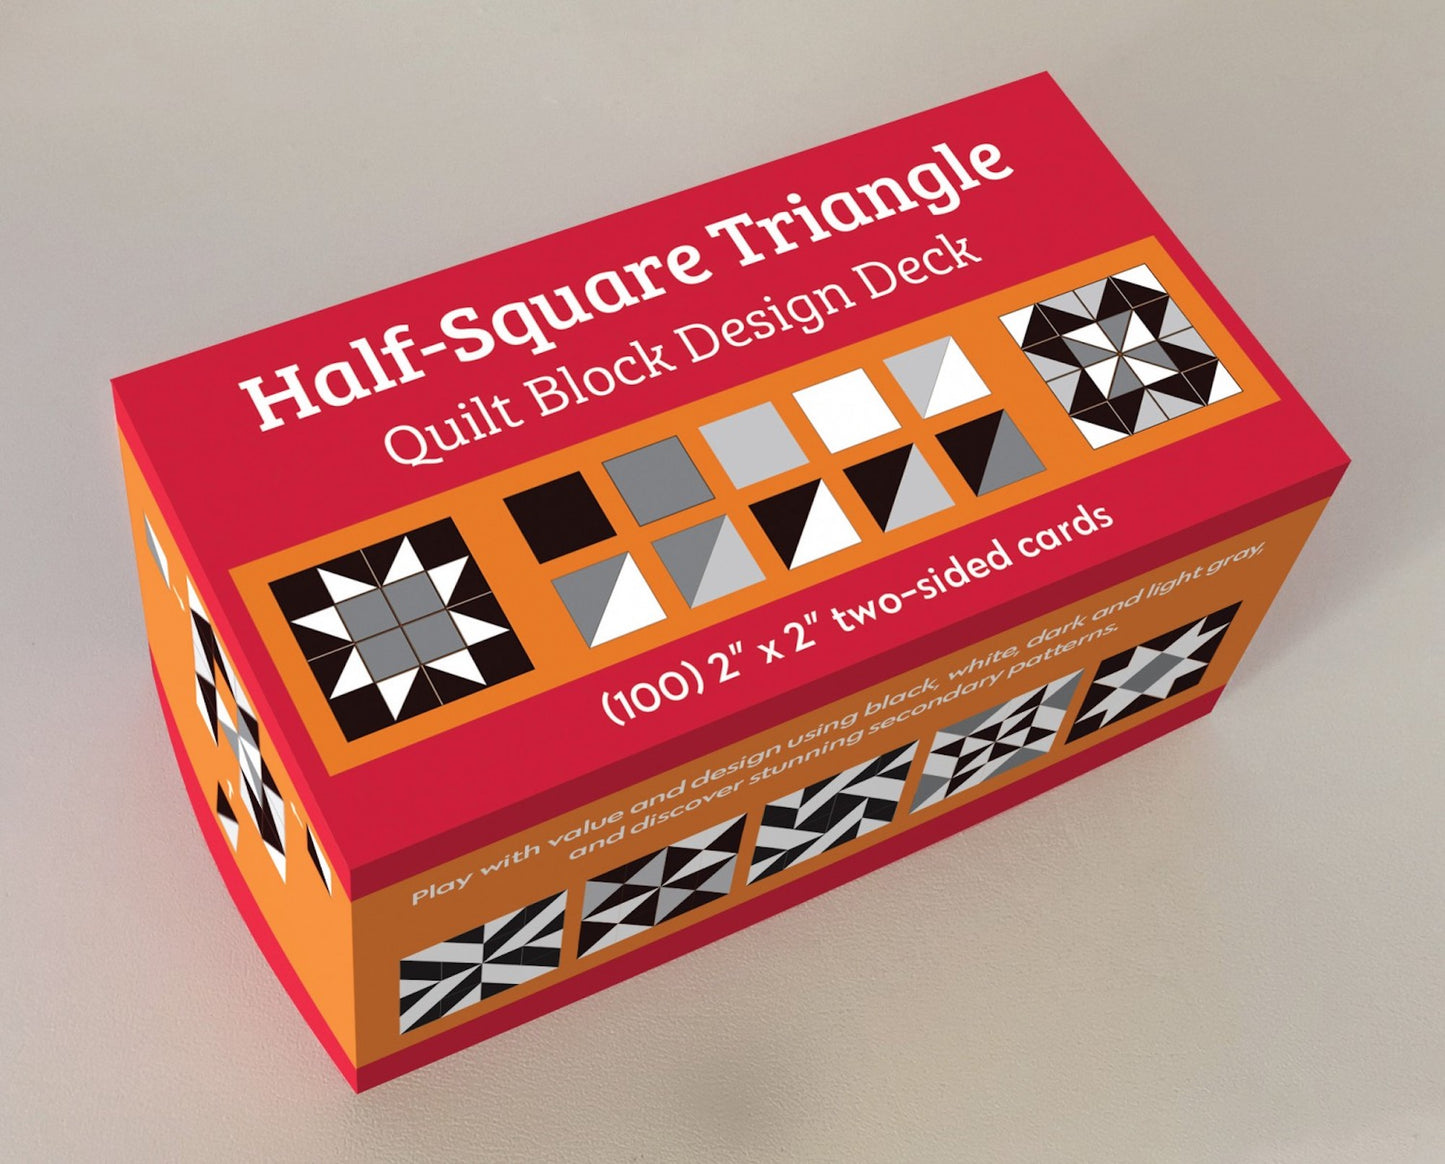 Half-Square Triangle Quilt Block Design Deck